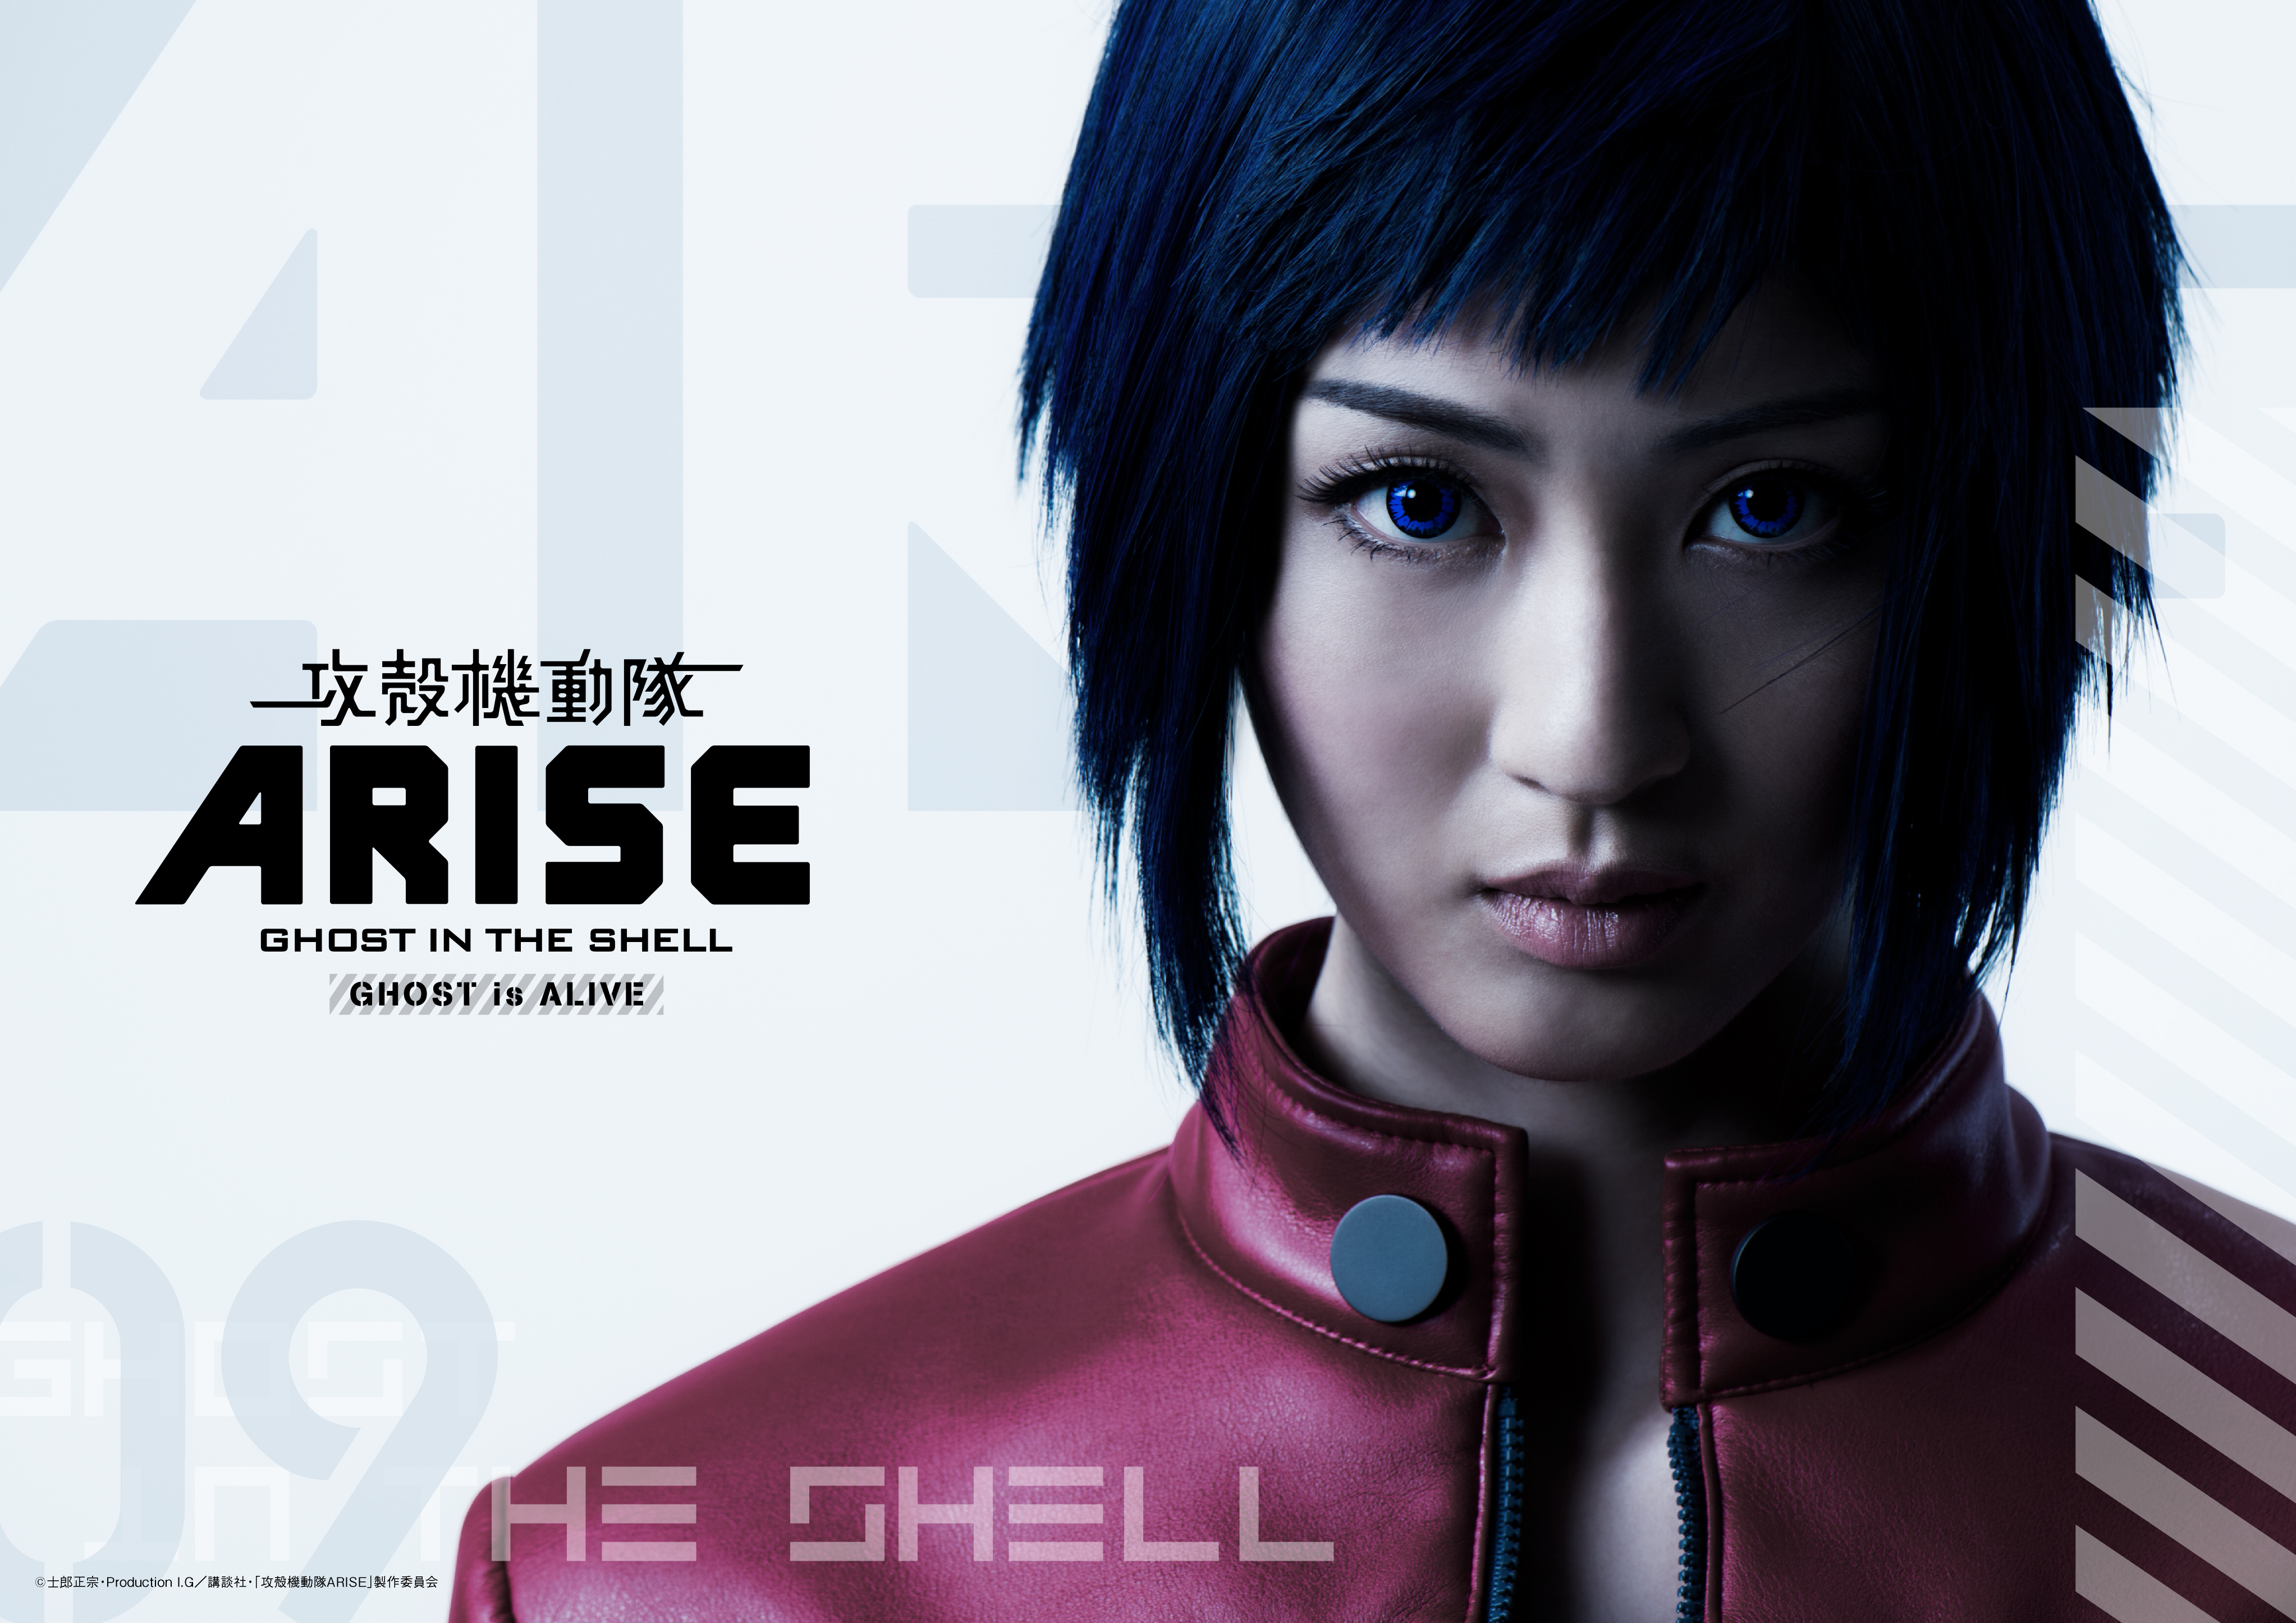 舞台 攻殻機動隊arise Ghost Is Alive のキービジュアル第1弾が公開 株式会社negaのプレスリリース